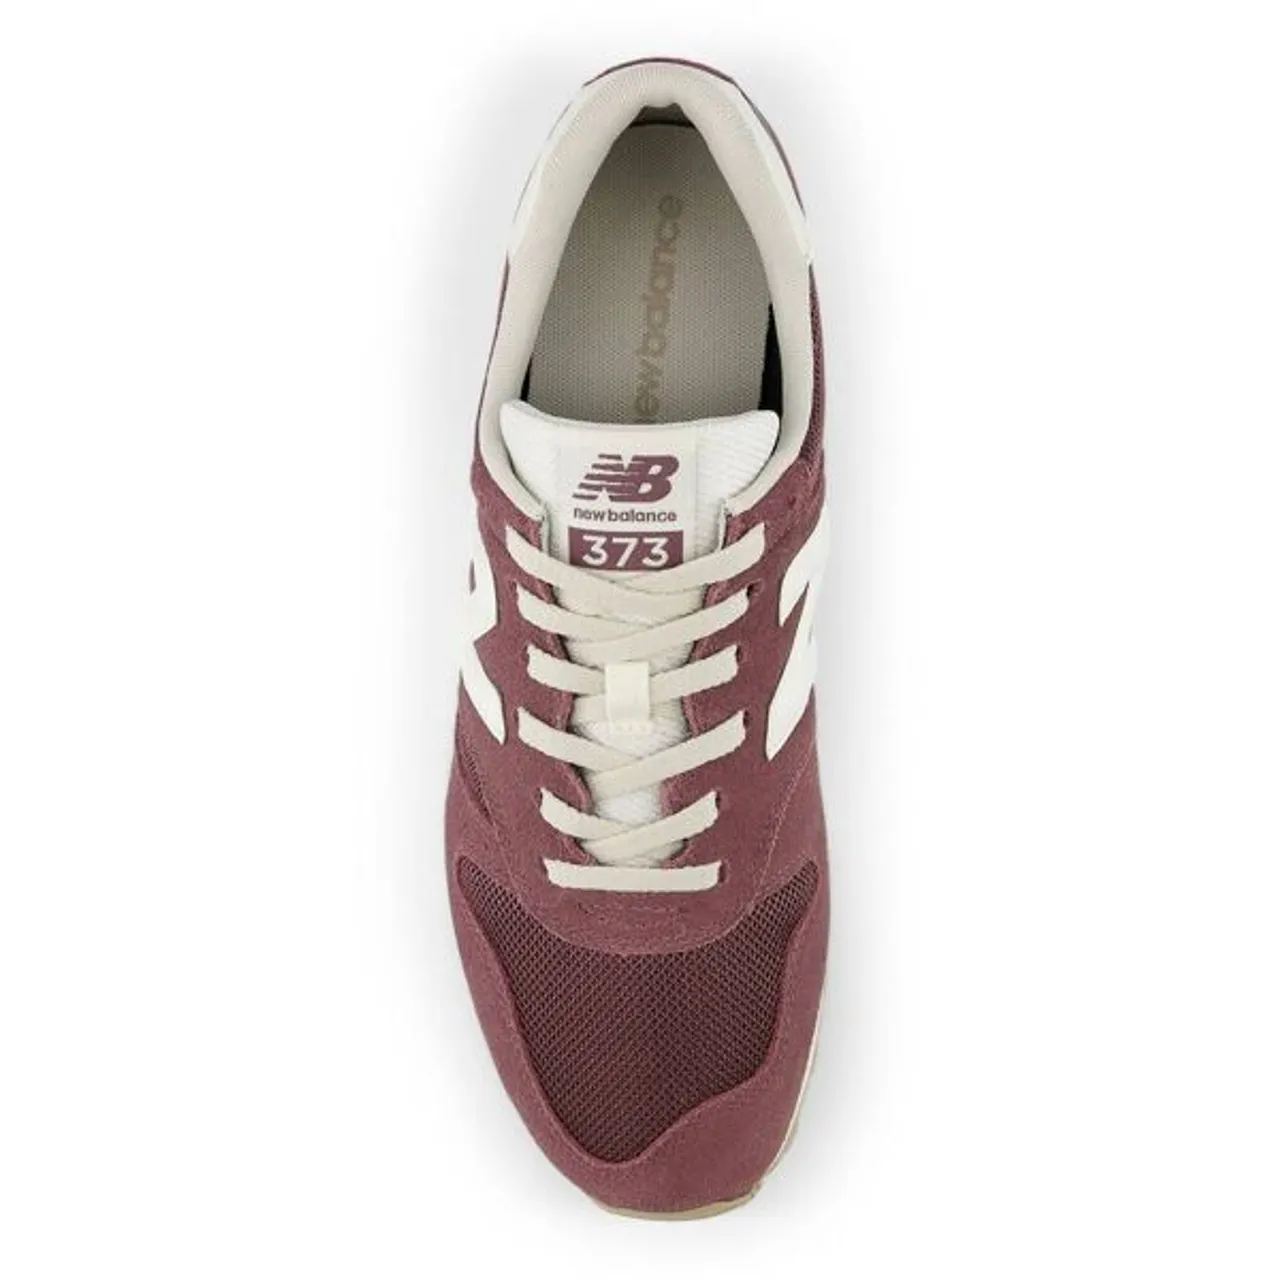 Sneaker NEW BALANCE "M373" Gr. 47,5, braun Schuhe Stoffschuhe